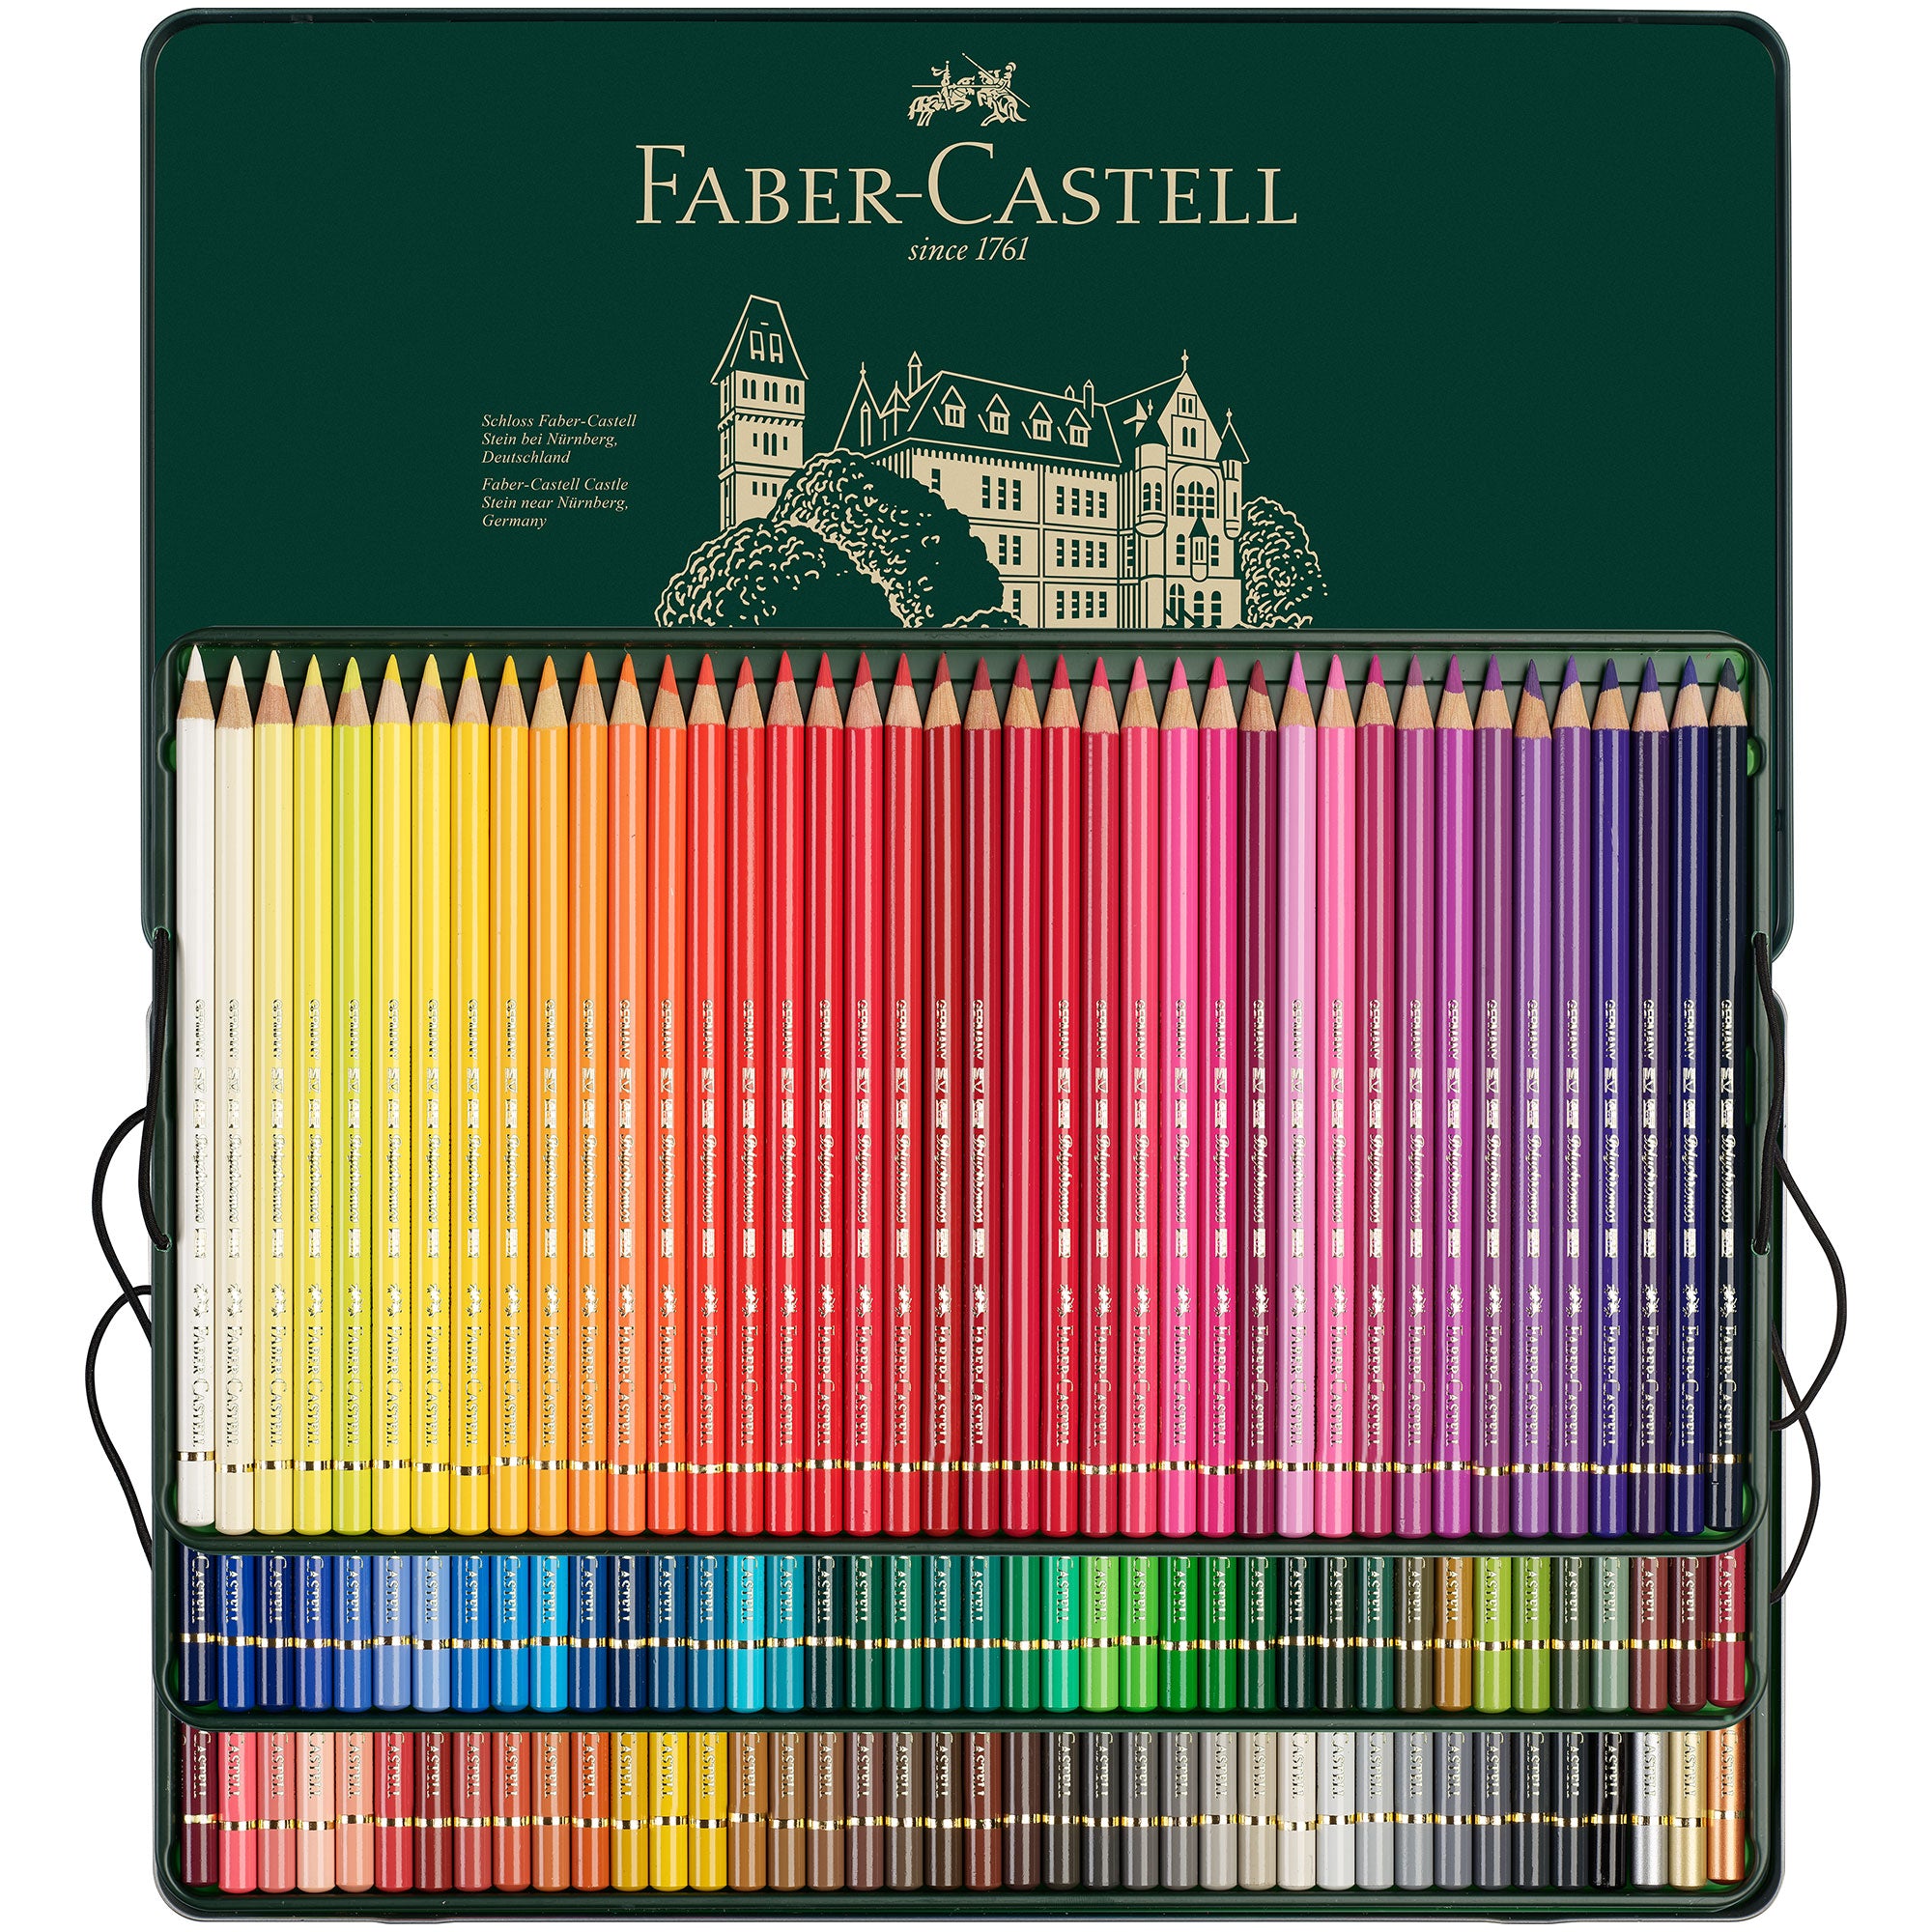 Faber-Castell Polychromos Set of 120 - Pencils